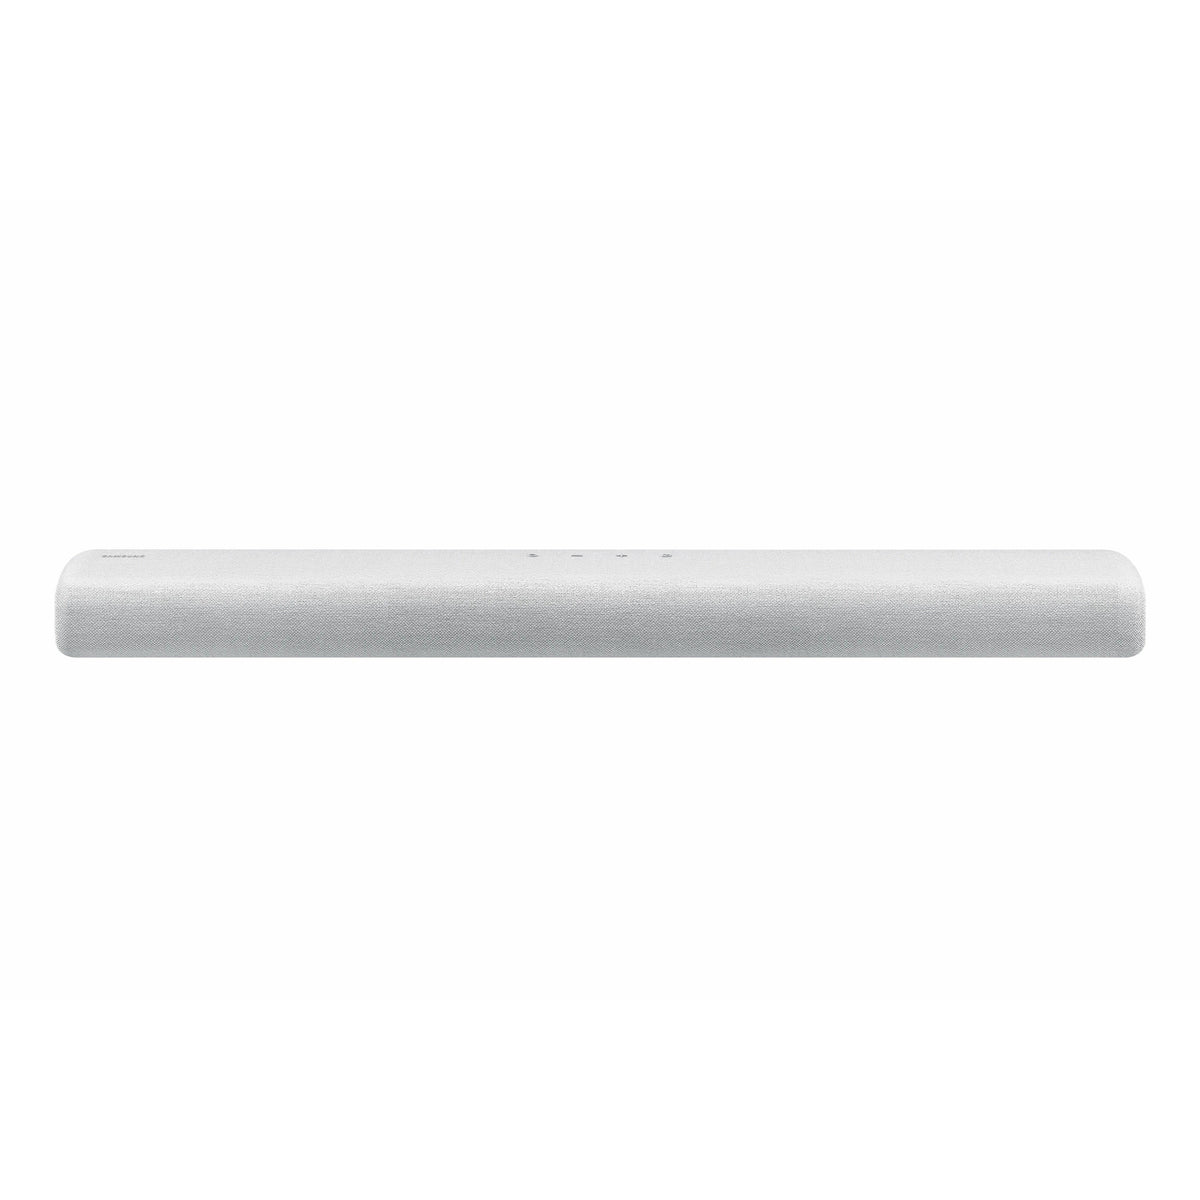 Samsung S60T 4.0ch Lifestyle All-In-One Soundbar - Silver | HW-S61T/XU (6890904256700)